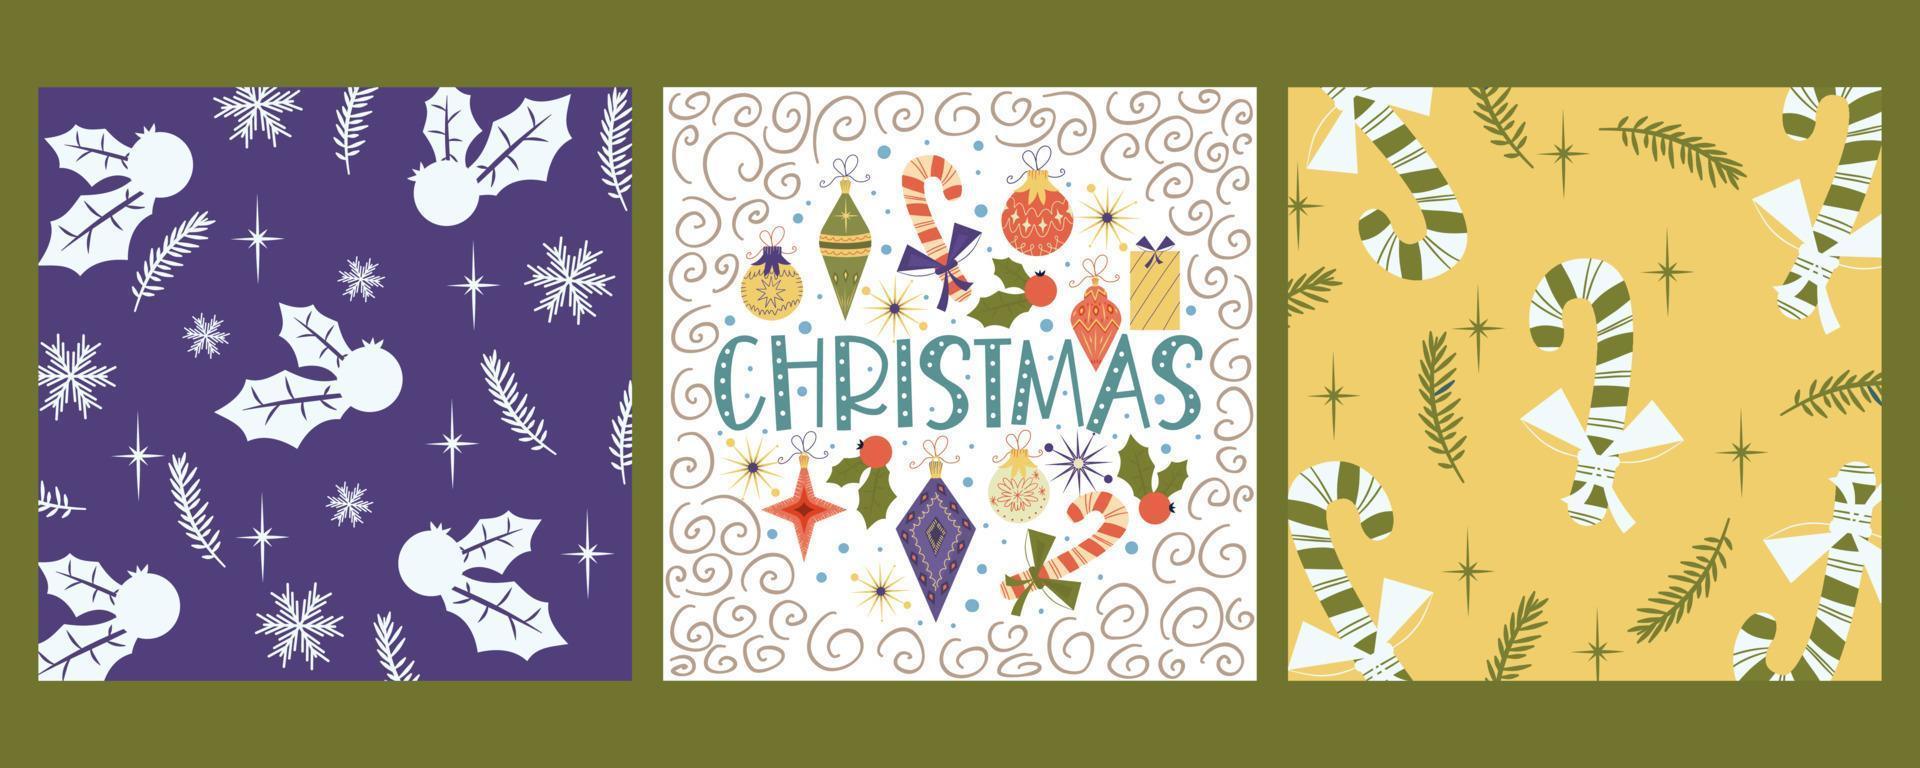 conjunto de capas vintage de Natal para congratulations.template com pirulito, azevinho, brinquedos e presentes. ilustração vetorial. vetor